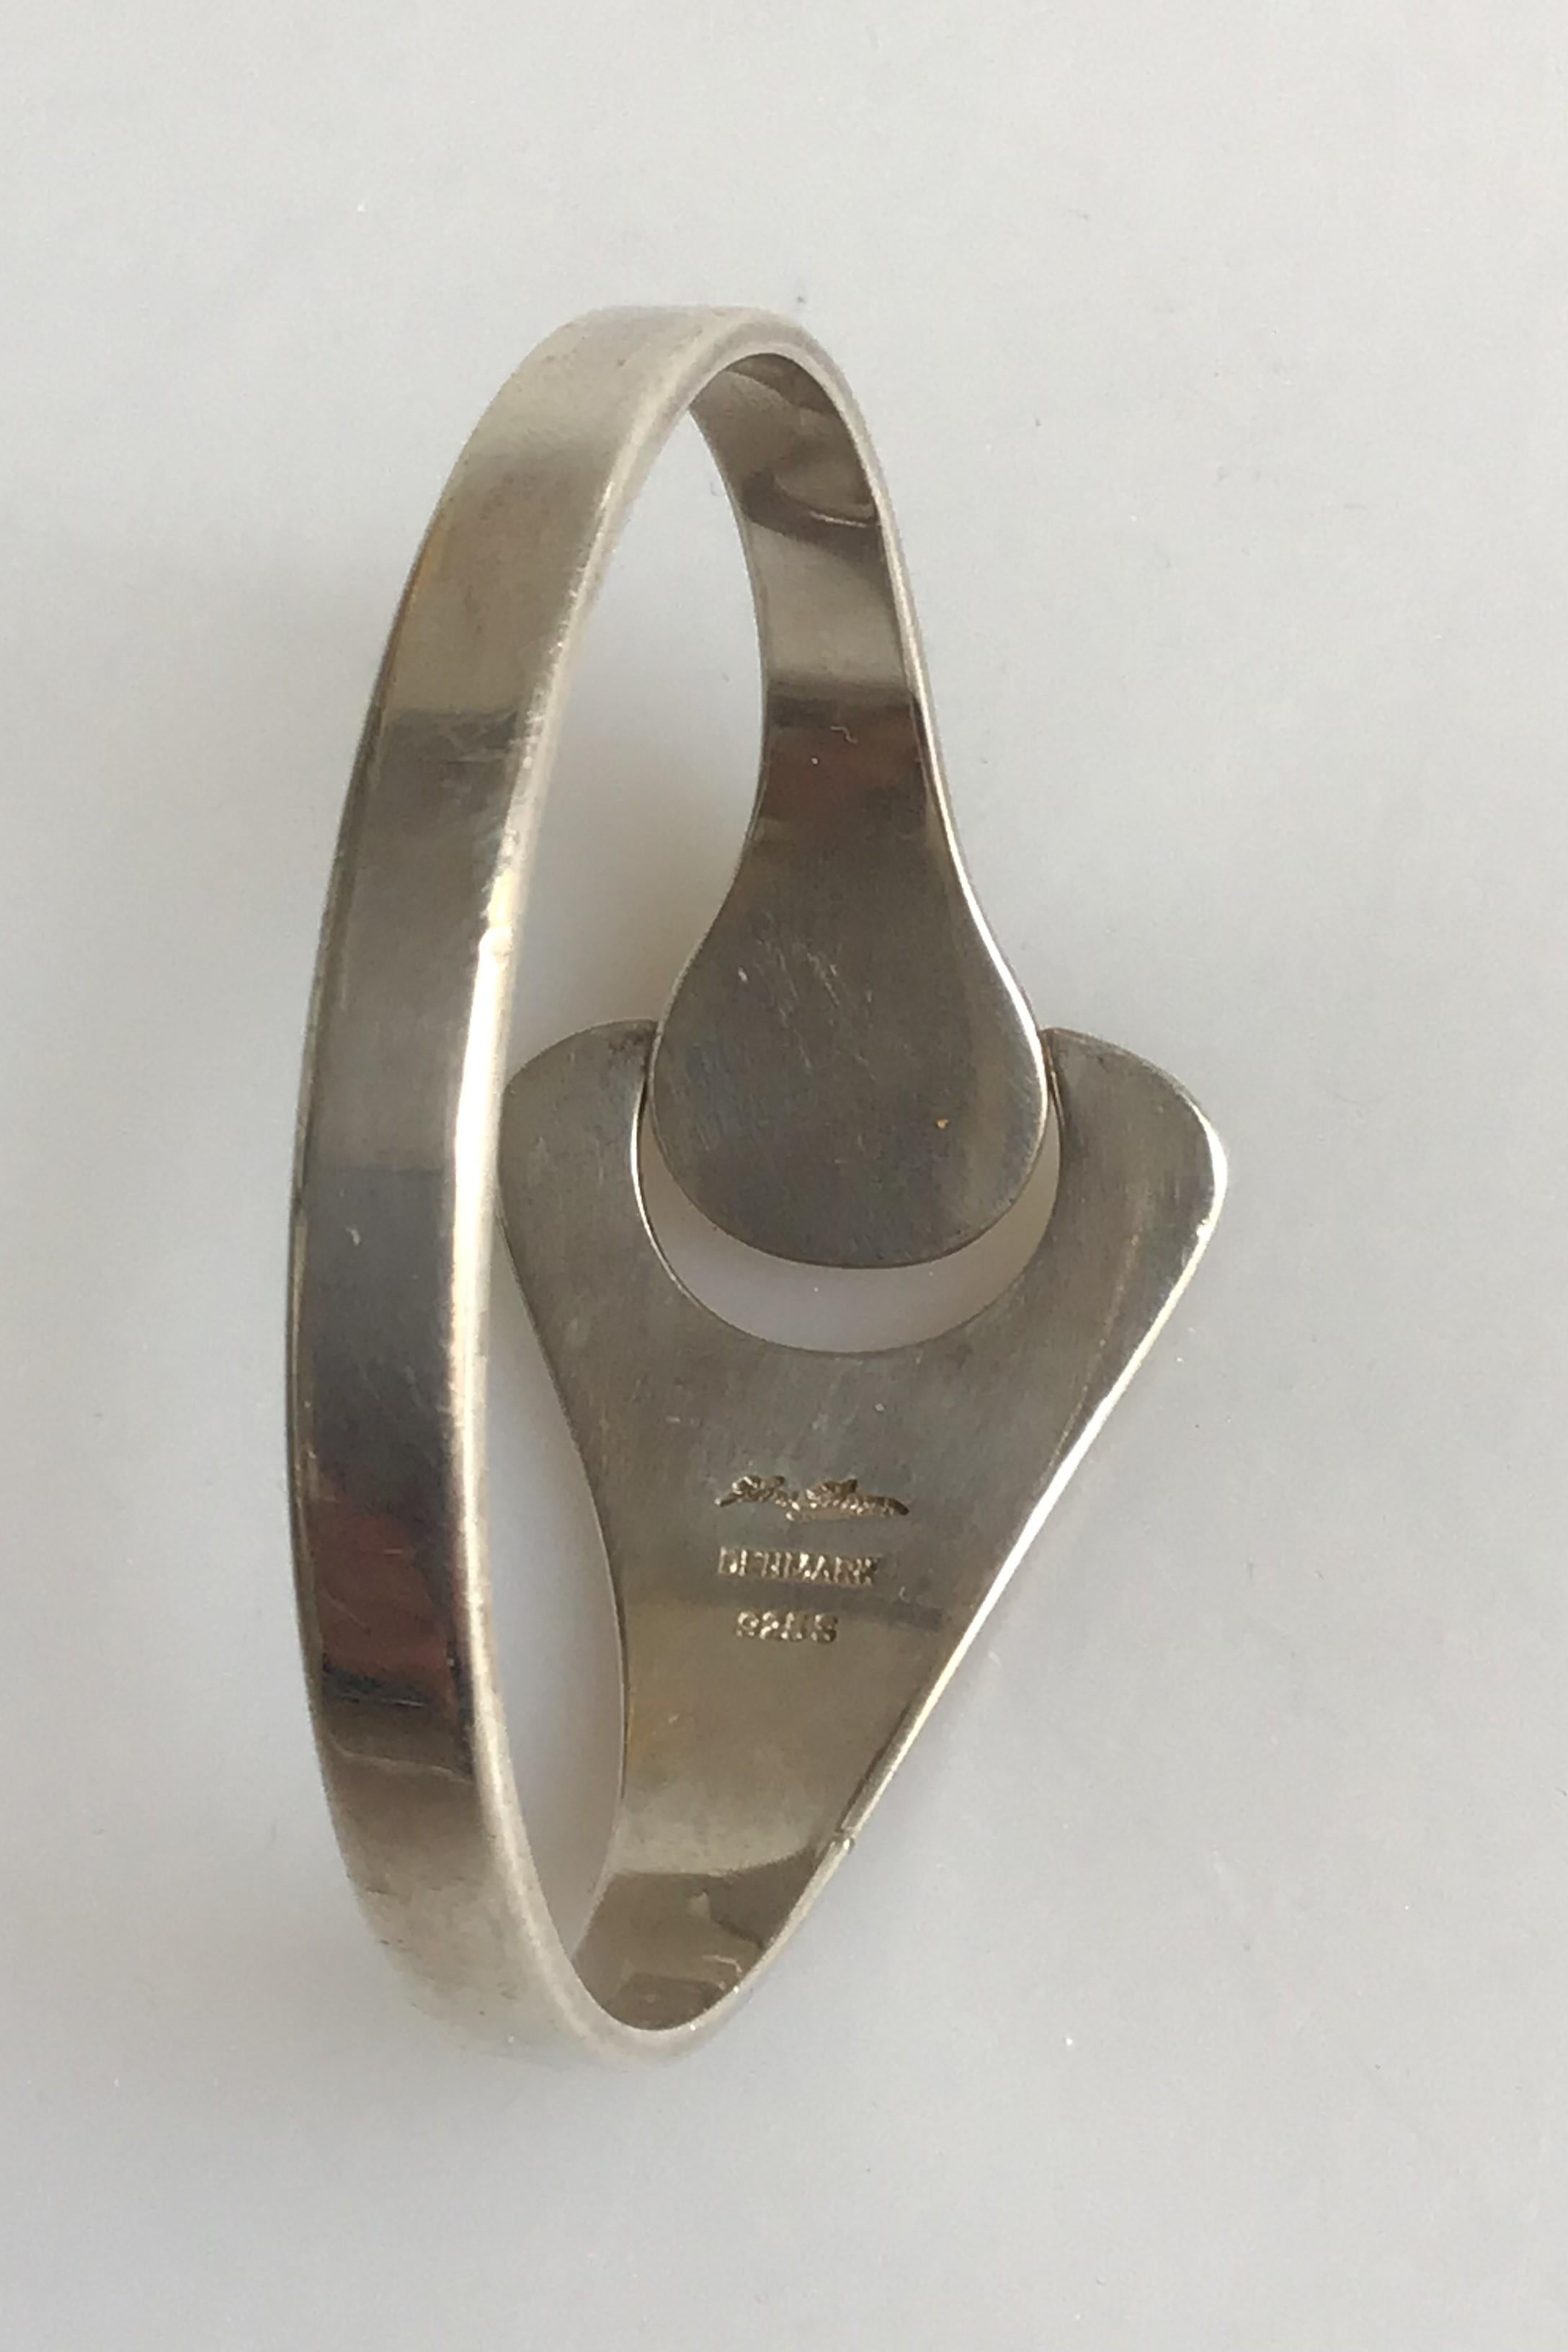 Hans Hansen Sterling Silver Bangle Bracelet. Measures 5.8 cm inner measurement / 2.28